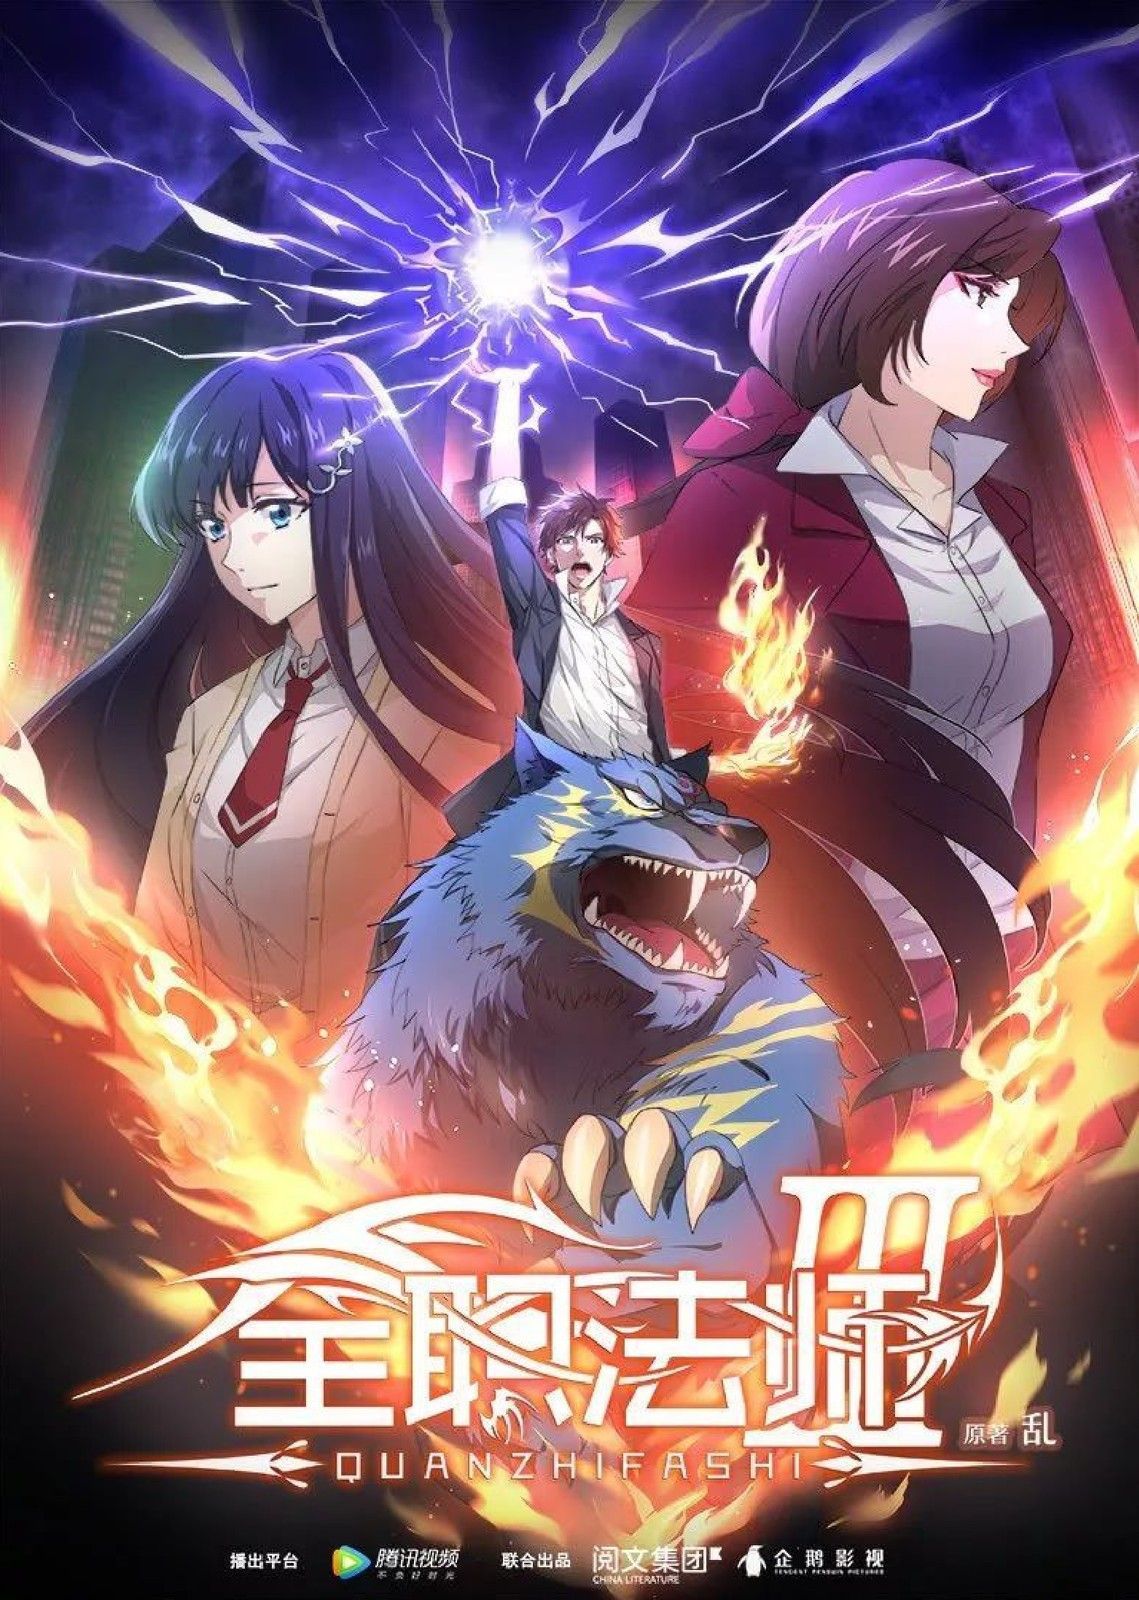 Quanzhi Fashi 3nd season. Cosplay anime, Anime episodes, Anime